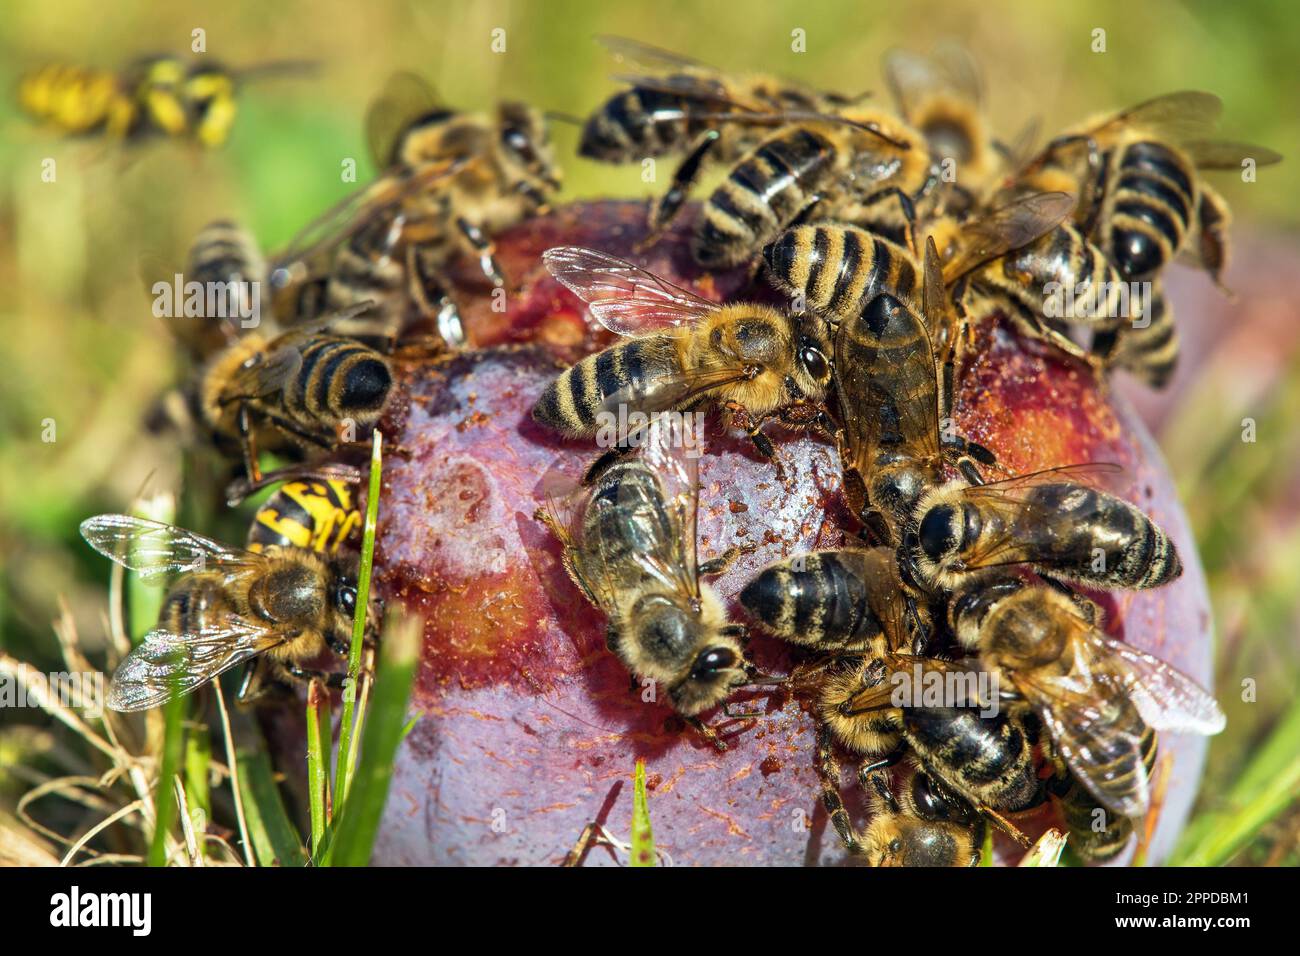 Abeille ou abeille dans le latin APIs mellifera, abeilles miel sur le fruit prune Banque D'Images